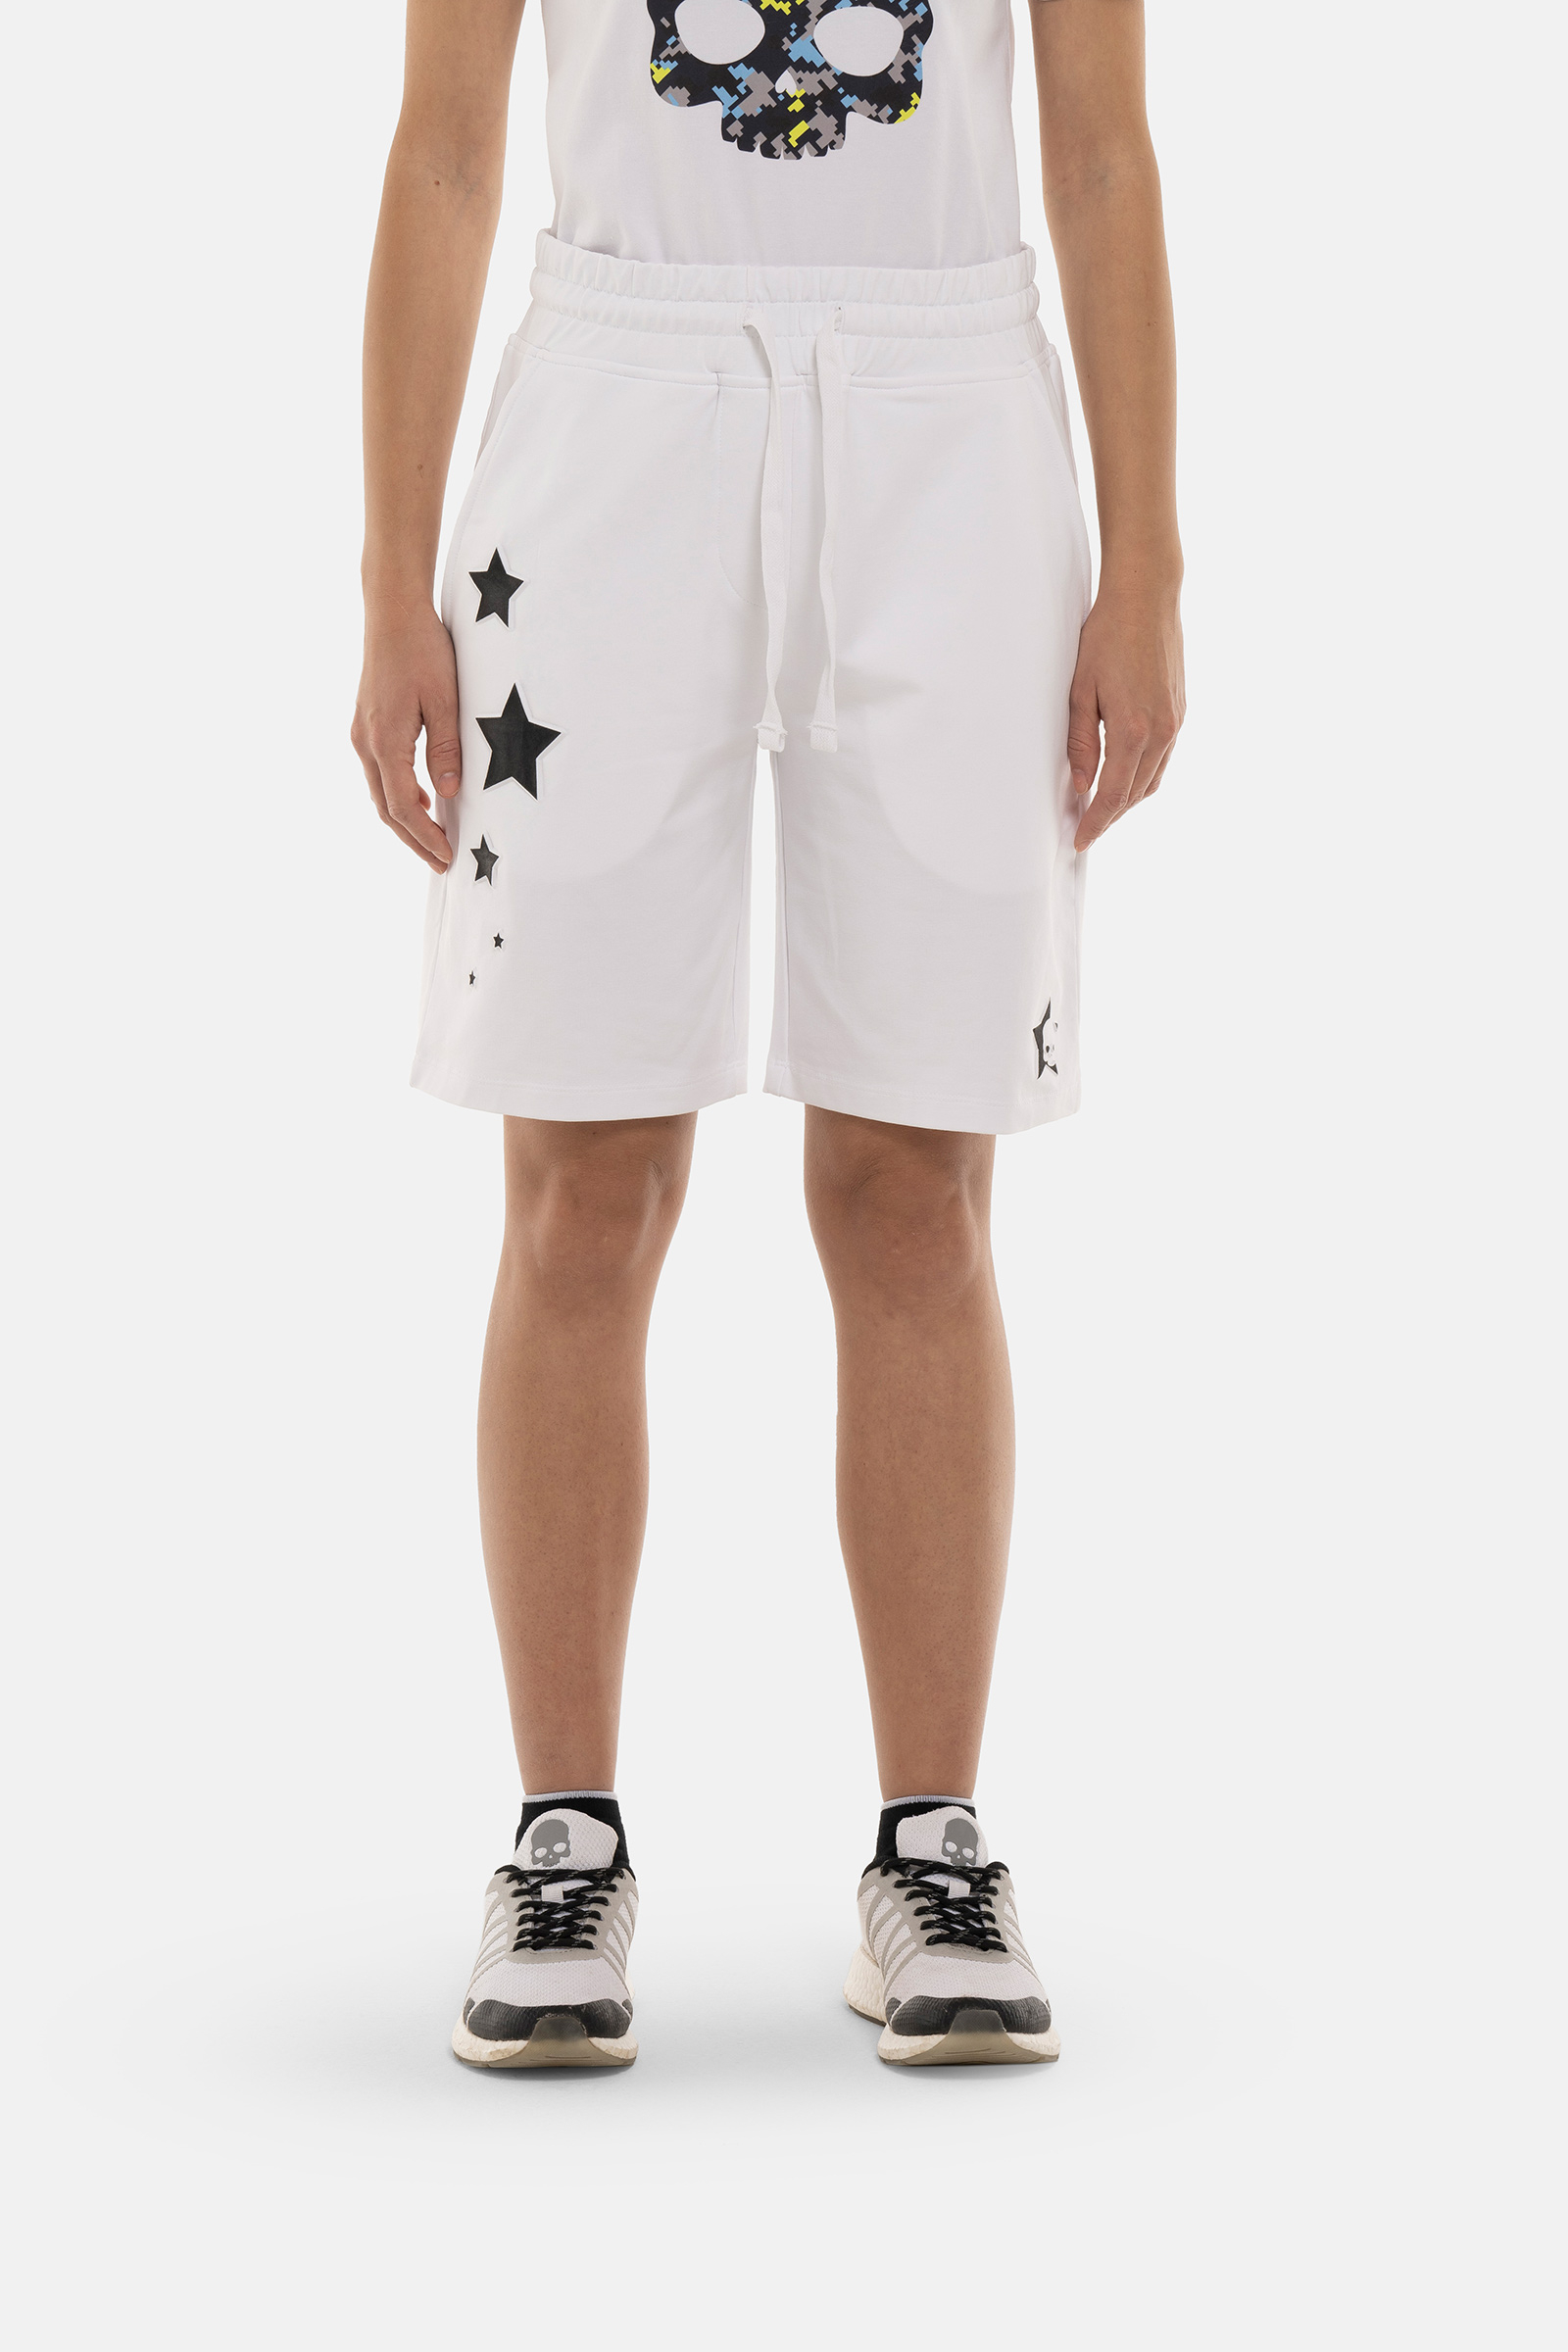 STARS SHORTS - Apparel - Hydrogen - Luxury Sportwear